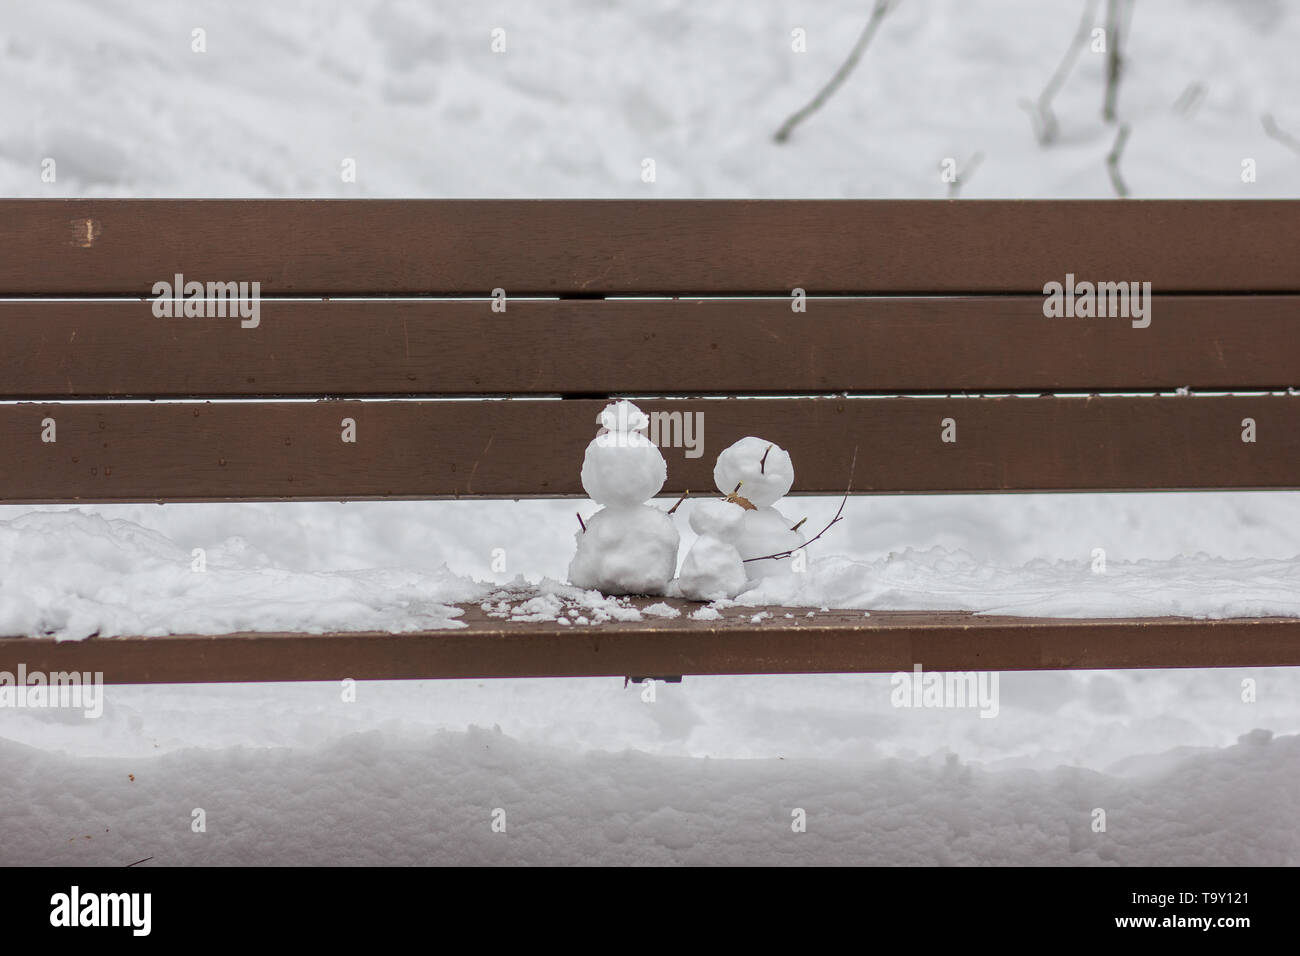 Ein Bild von einem kleinen Schneemann von zwei großen Schneemann auf einer Holzbank, begleitet. Stockfoto